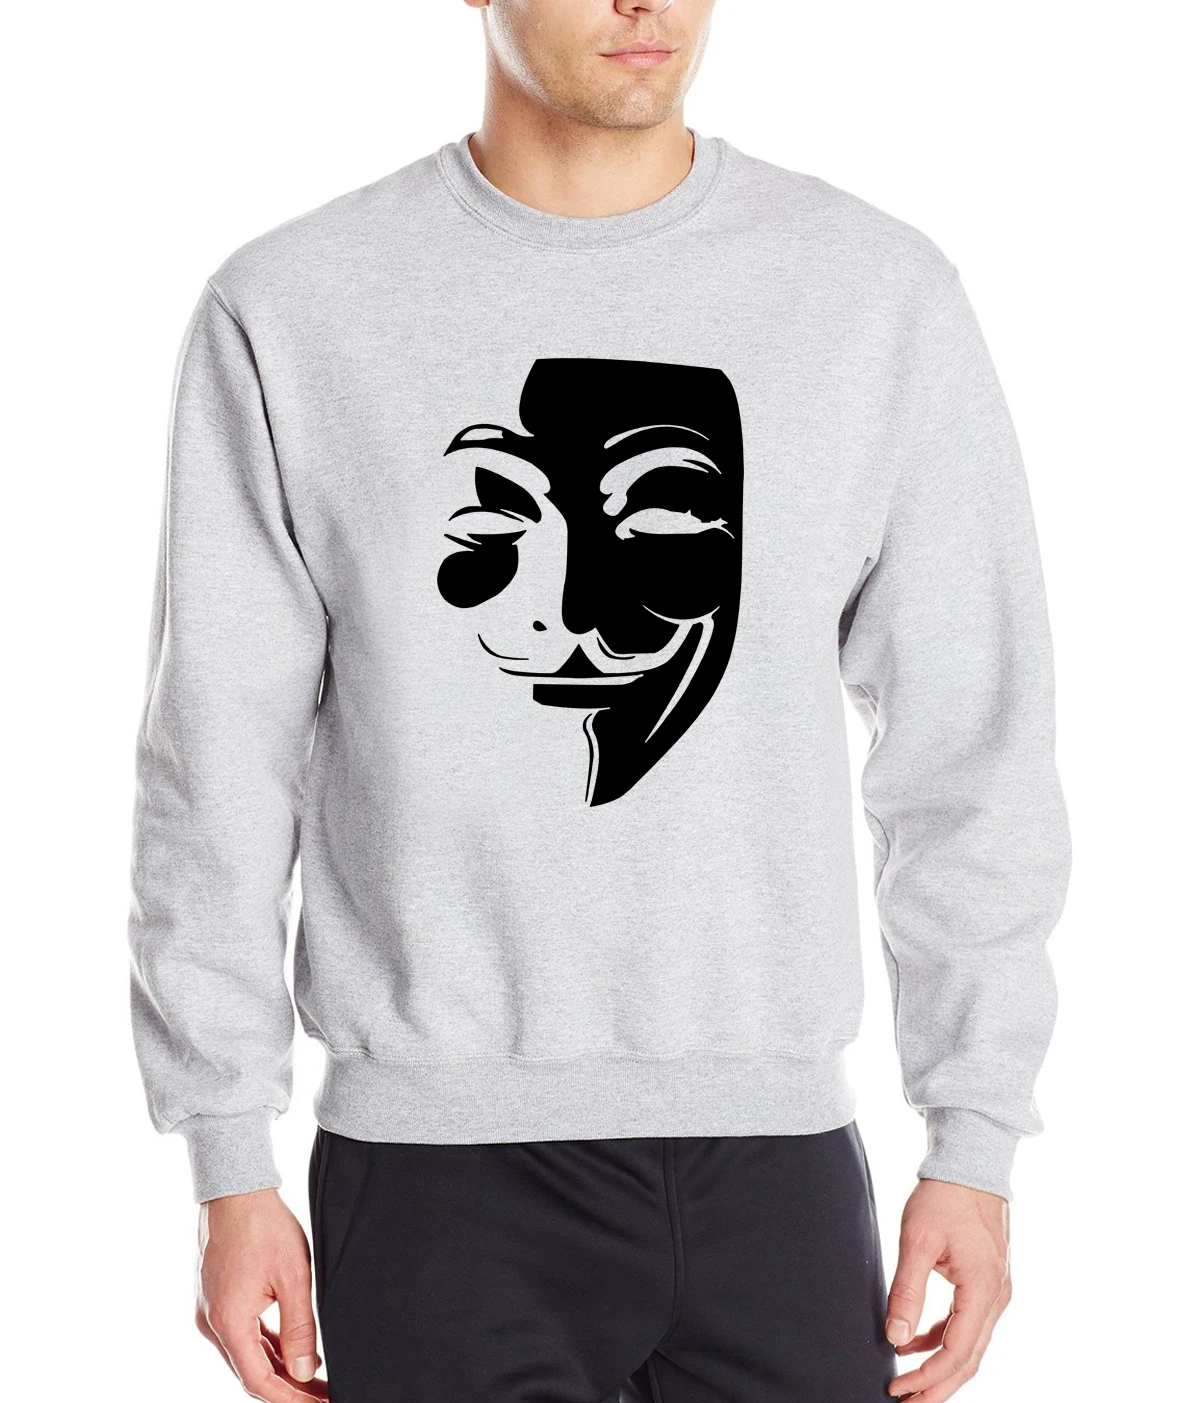 V for Vendetta Guy Fawkes толстовки мужские Горячая Распродажа Весна Зима Модные мужские толстовки хип-хоп спортивный костюм брендовая одежда S-2XL - Цвет: gray1